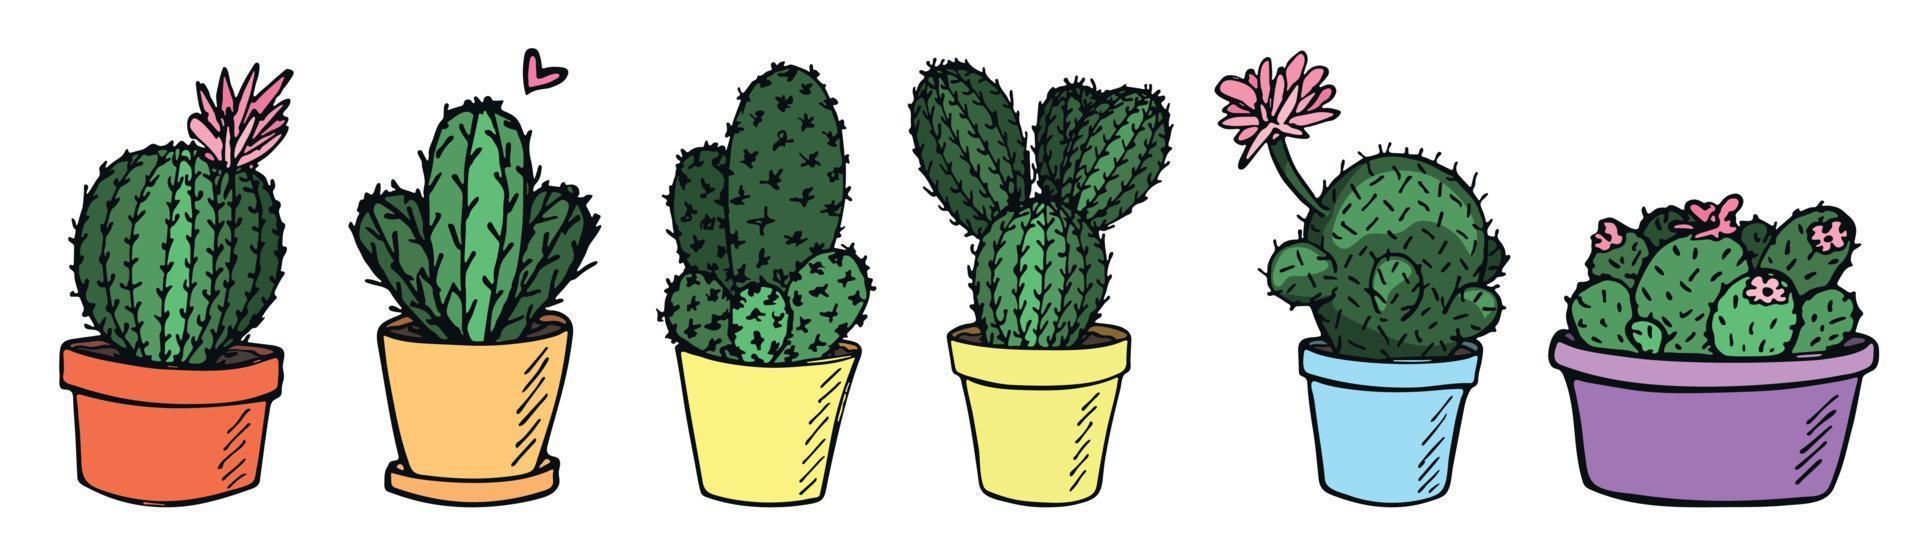 set van schattige handgetekende eenvoudige cactus. kamerplant in een pot clipart. cactussen illustratie. gezellige huiskrabbel. vector